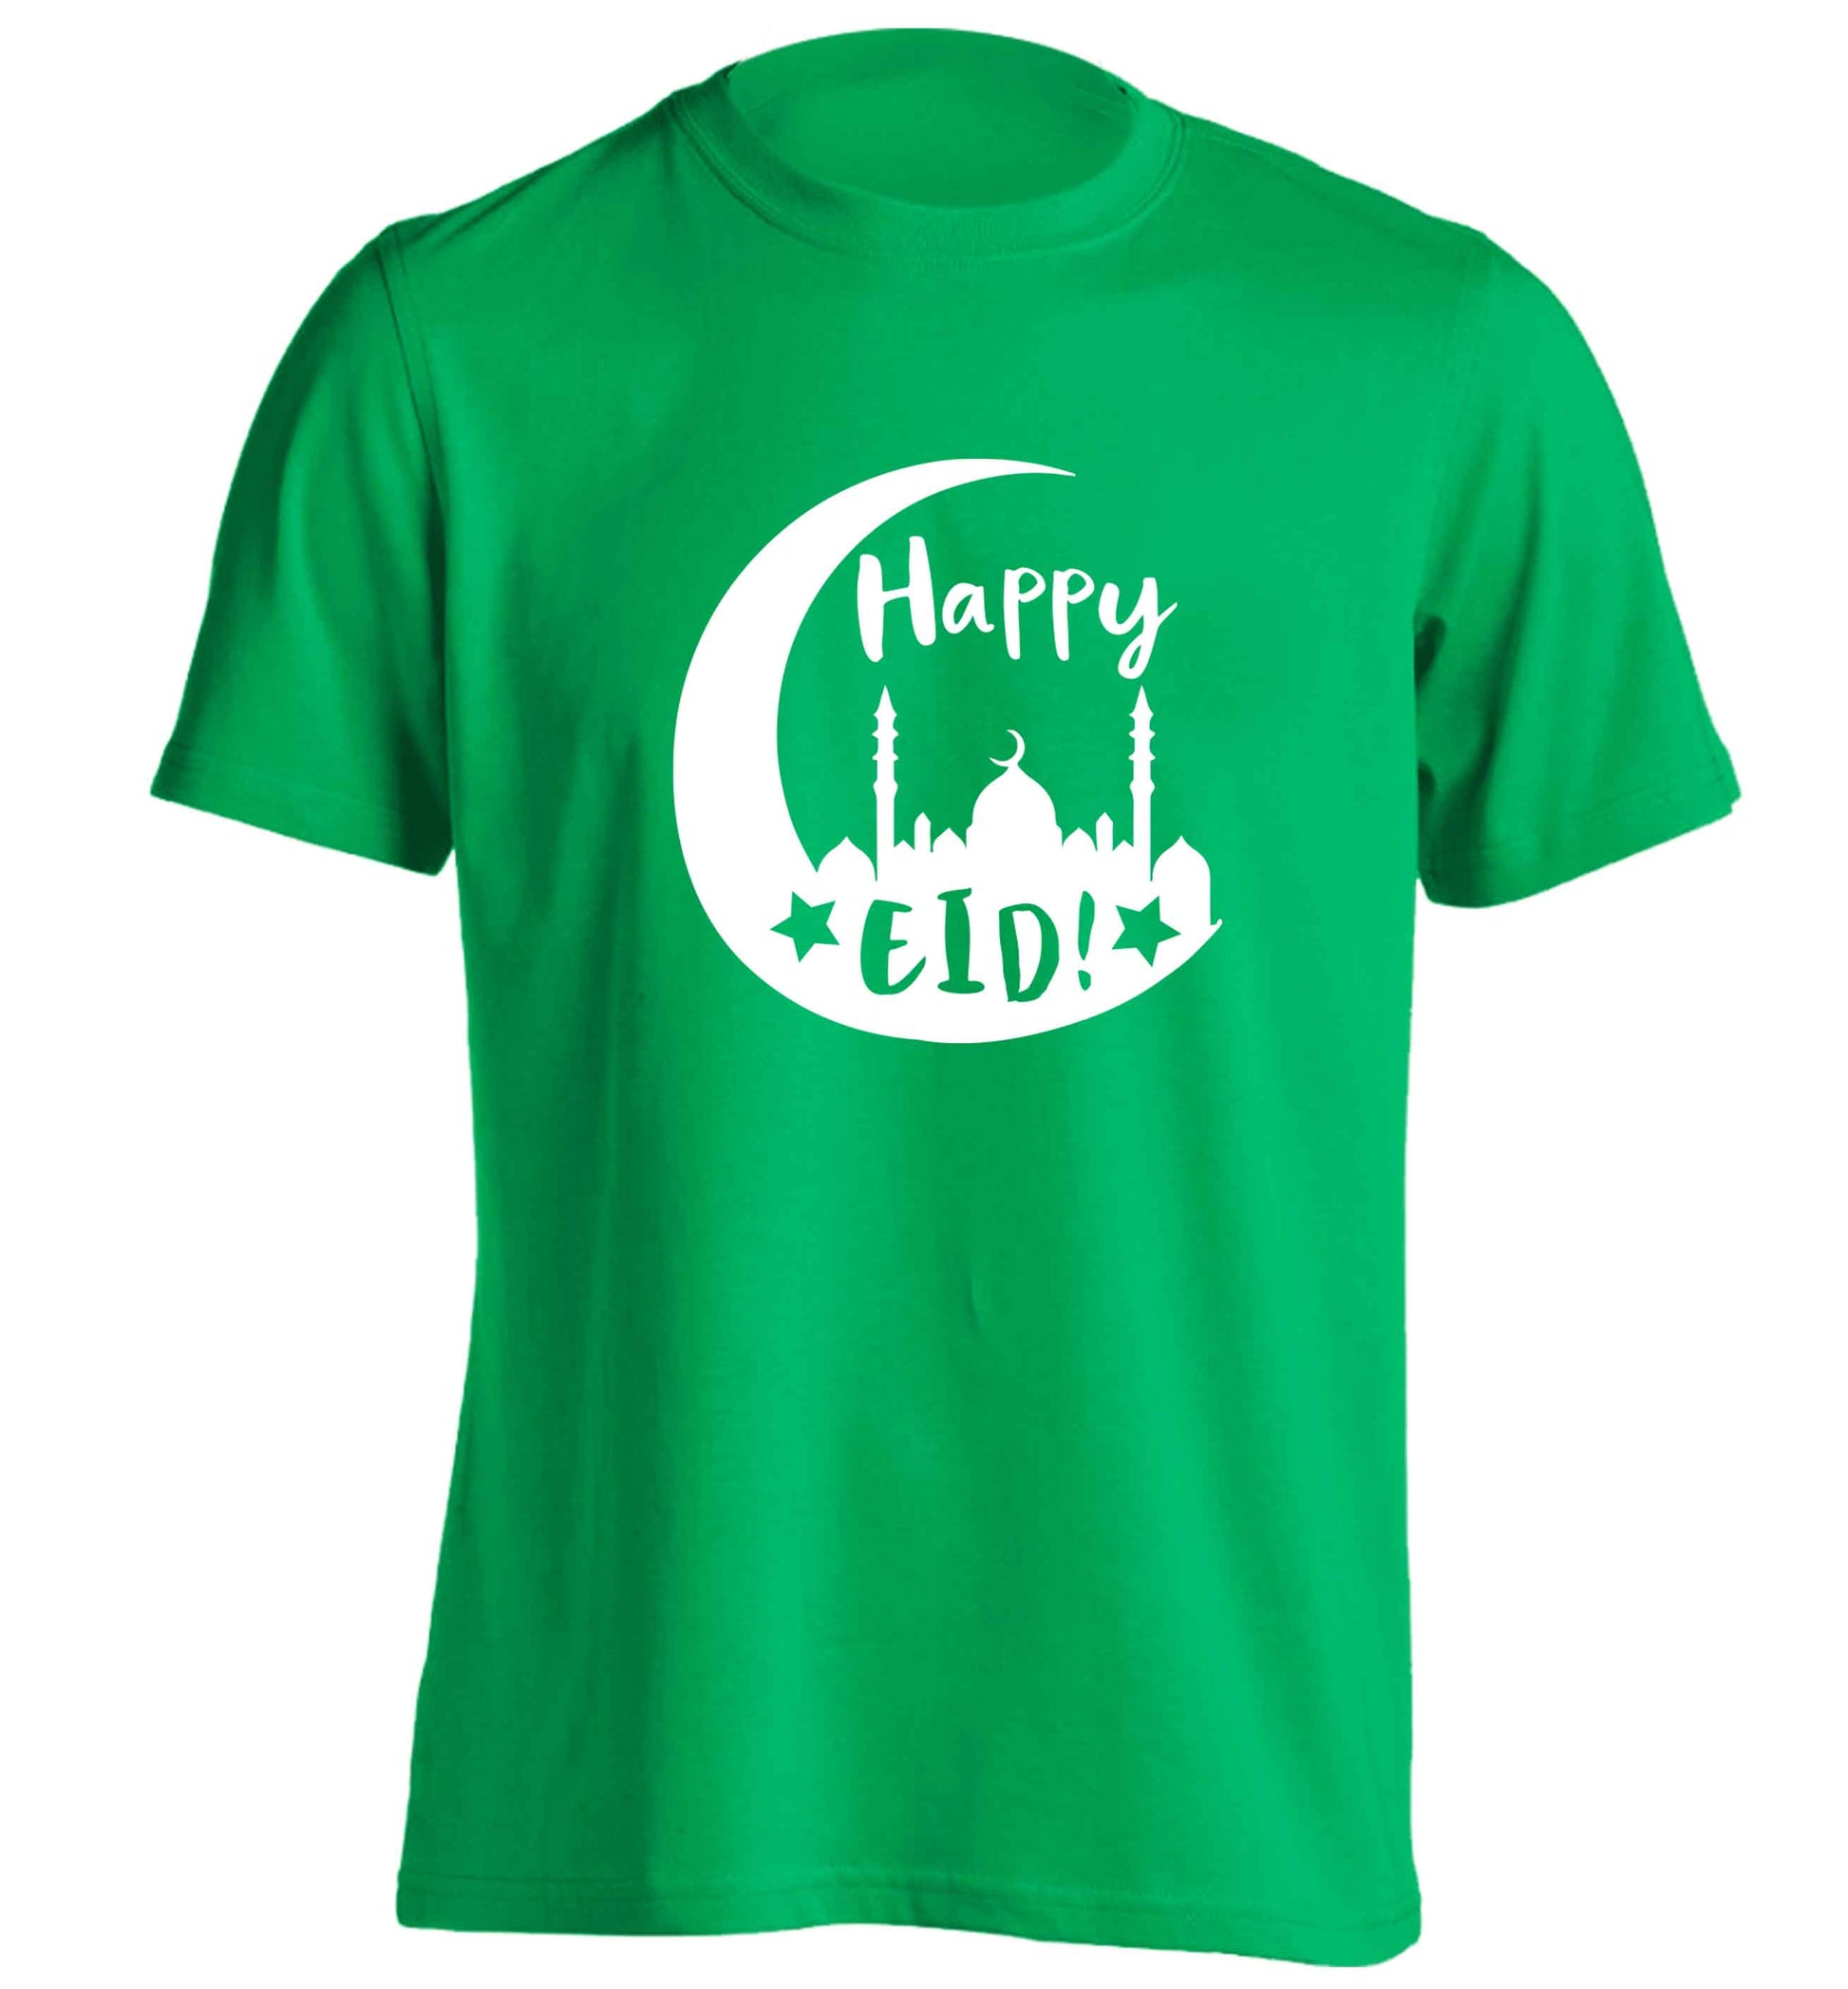 Happy Eid adults unisex green Tshirt 2XL